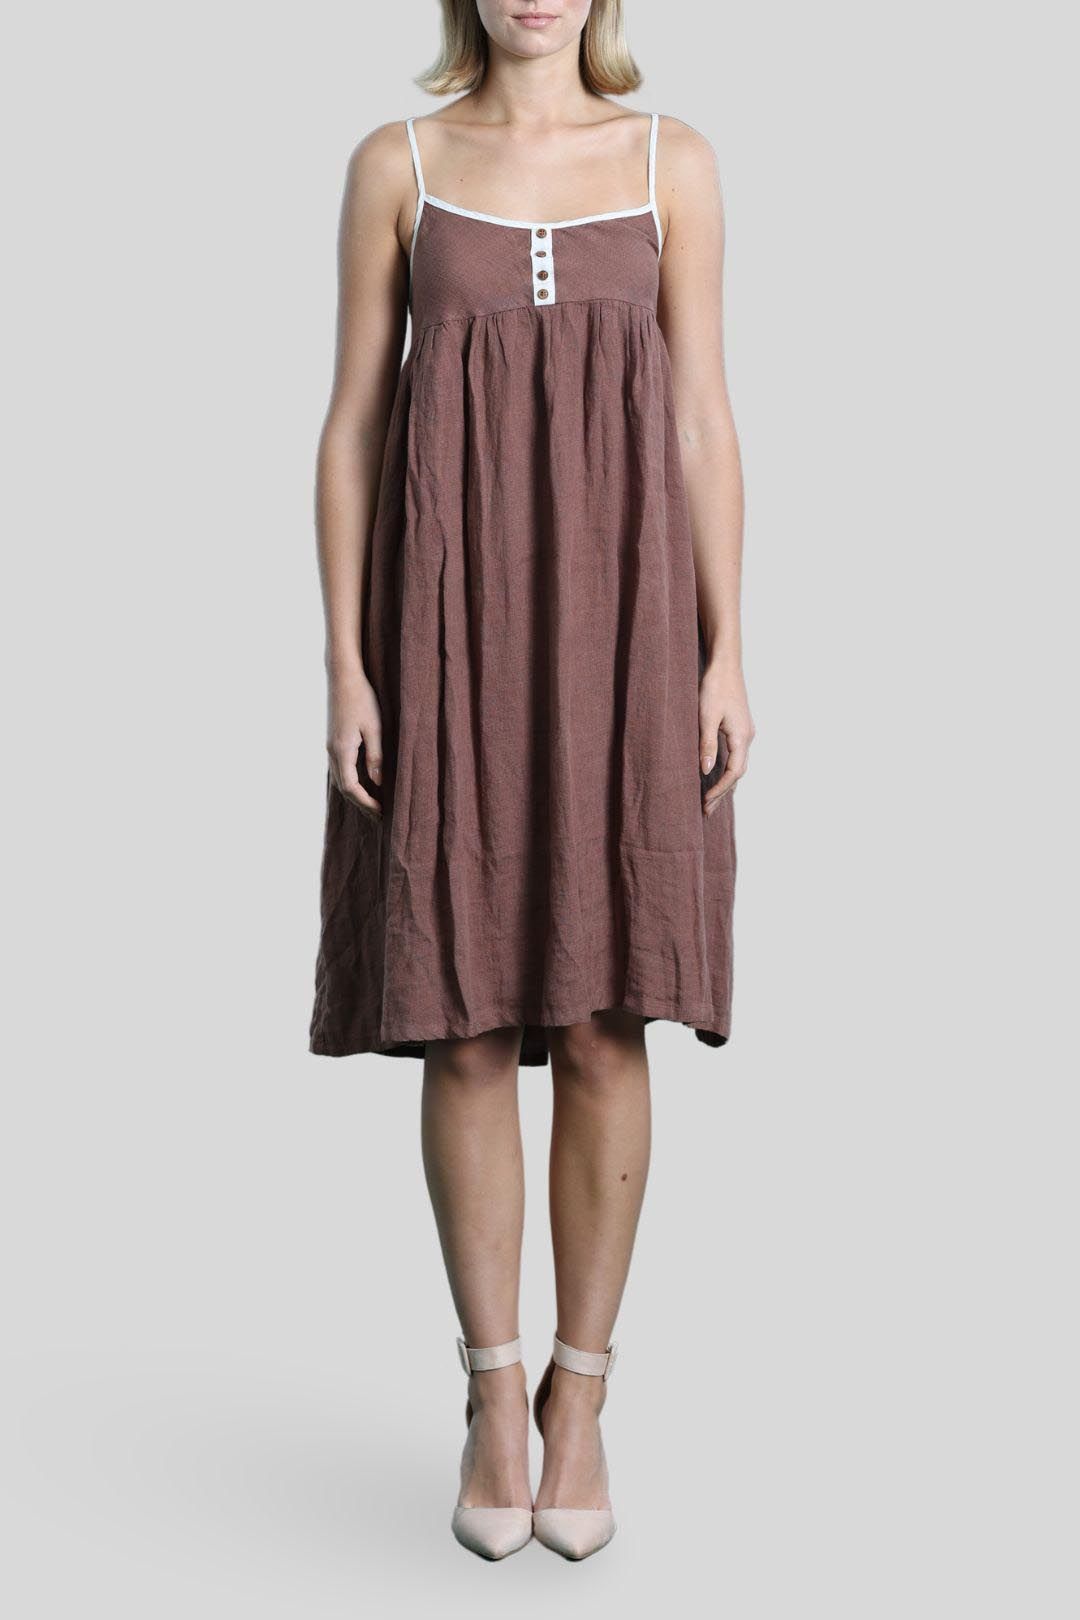 Brave + True - Brown Midi Slip Dress